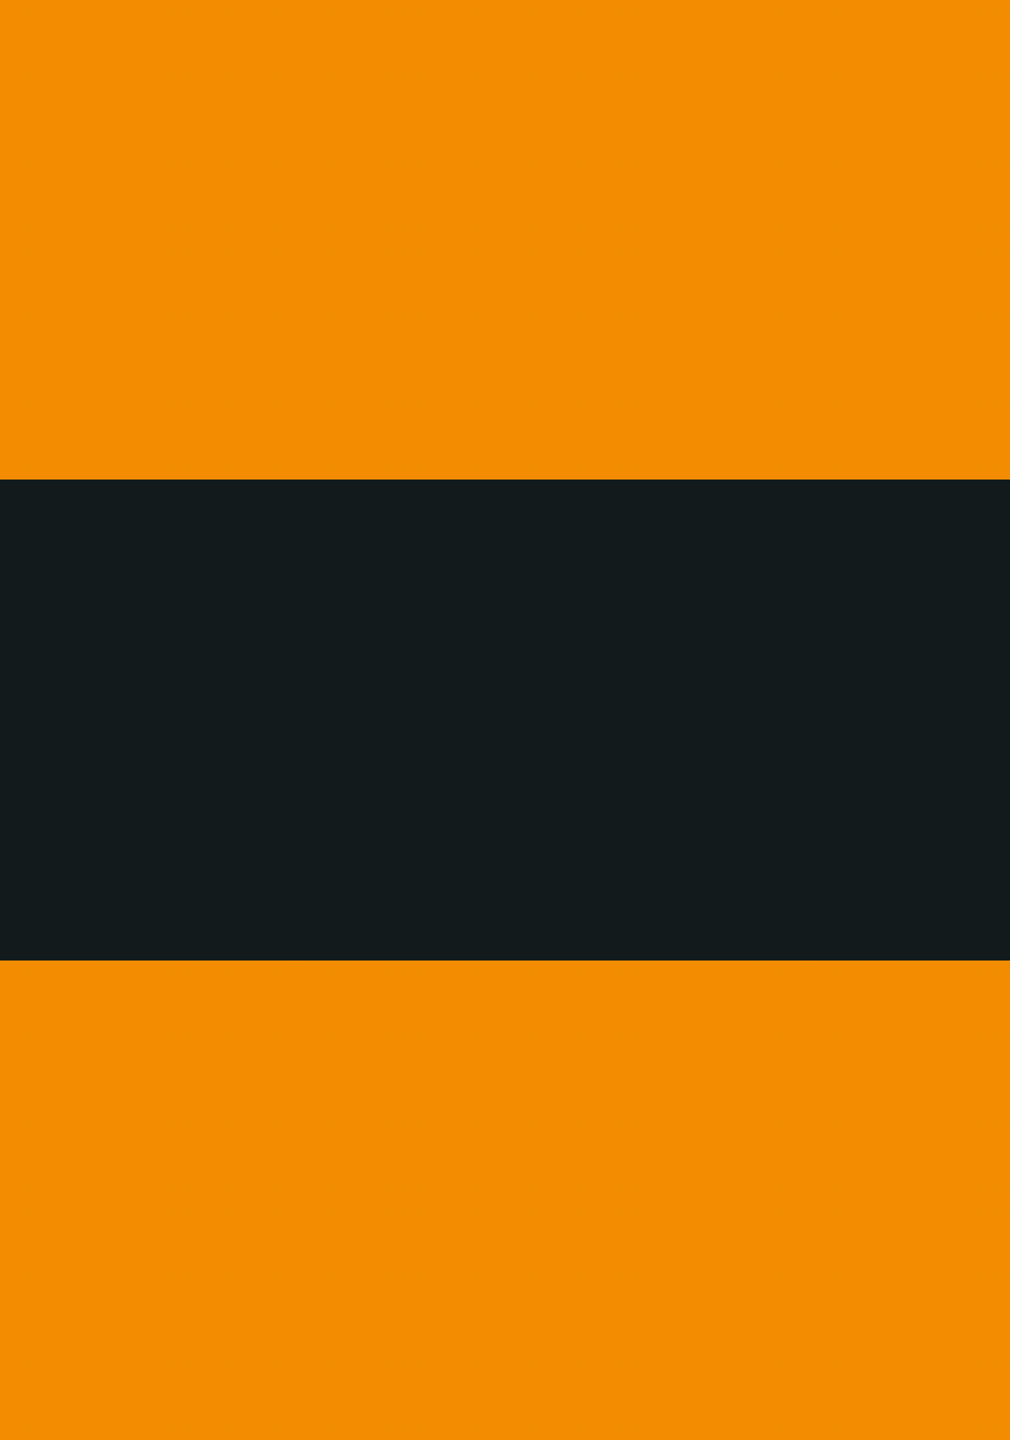 11: Lakridskonfekt - Orange og sort af Ten Valleys